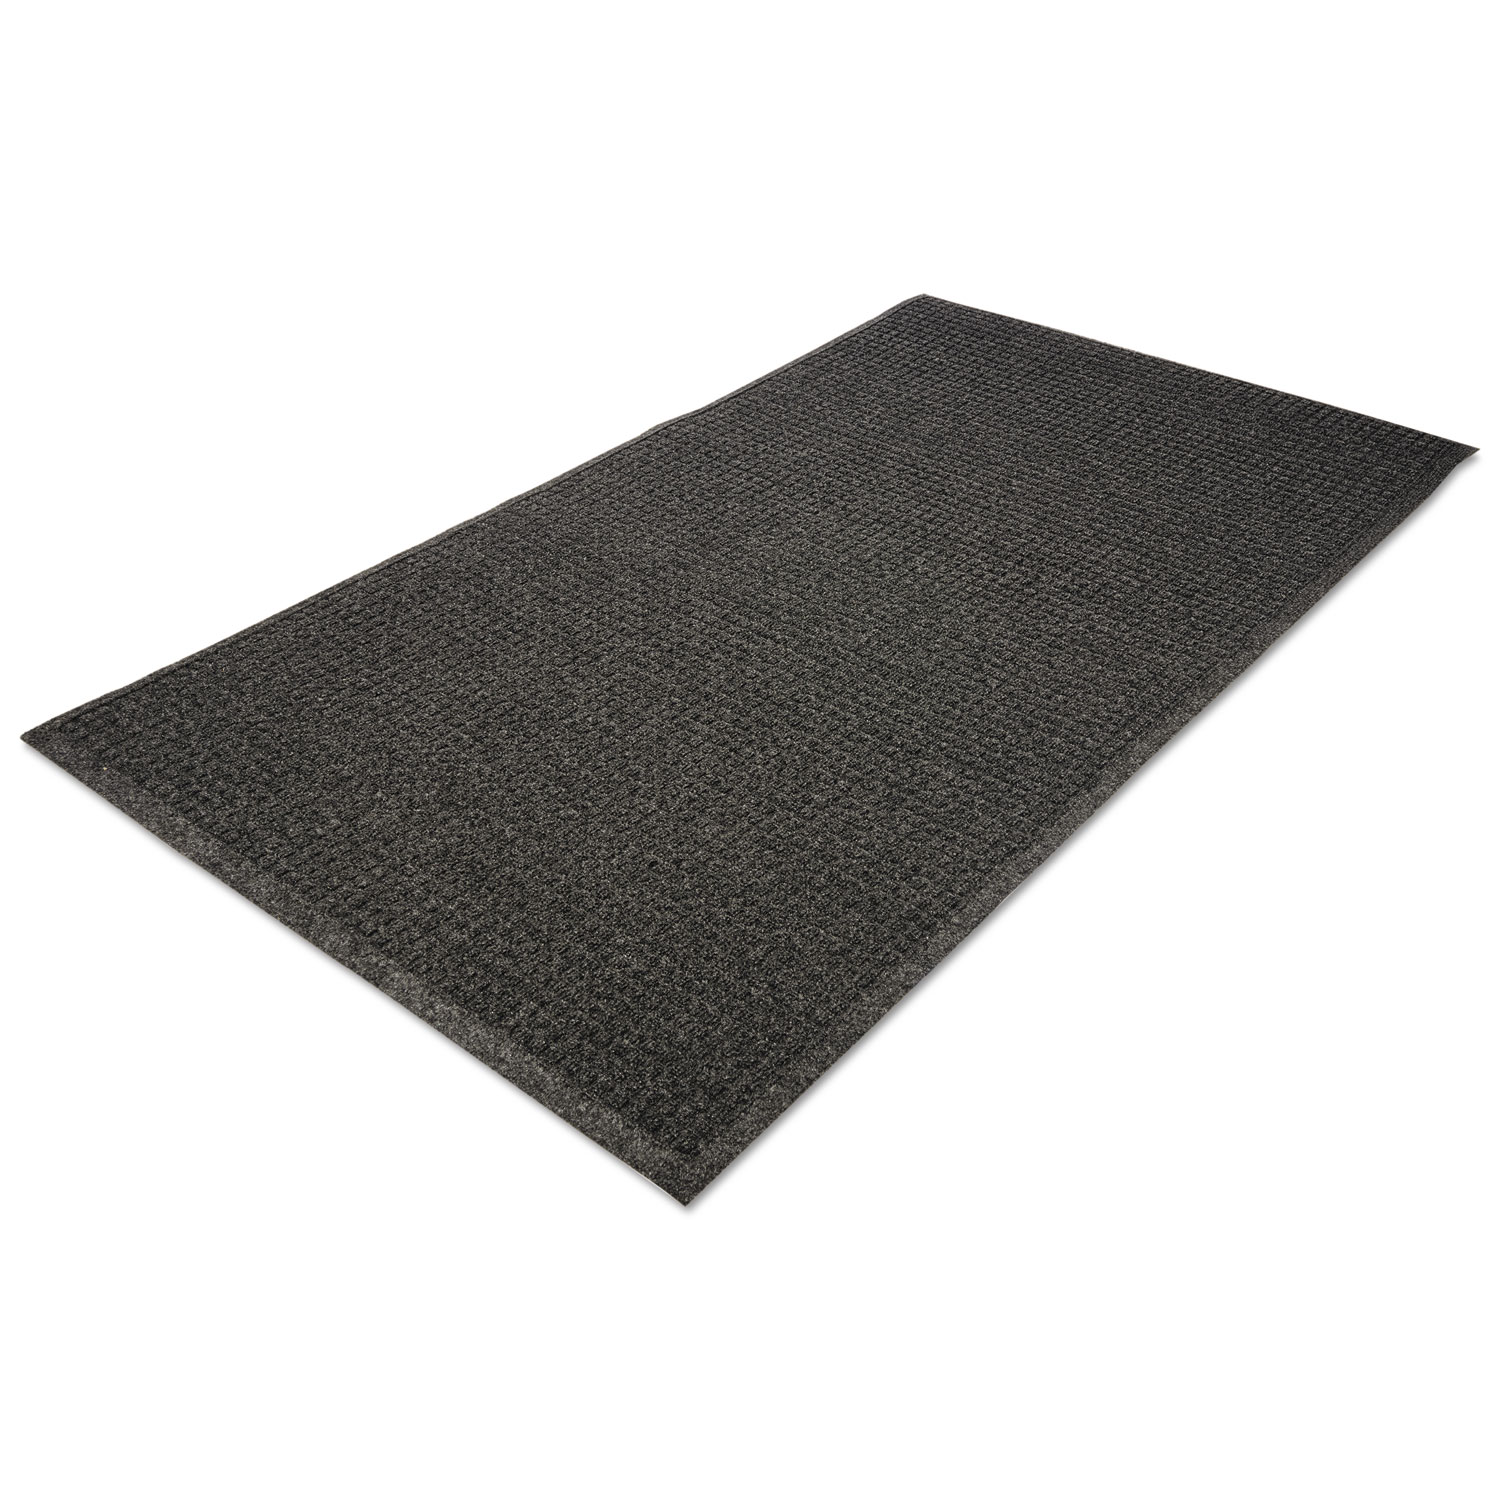 Genuine Joe EcoGuard Indoor Wiper Floor Mats - Indoor - 72" Length x 48" Width - Plastic, Rubber - Charcoal Gray